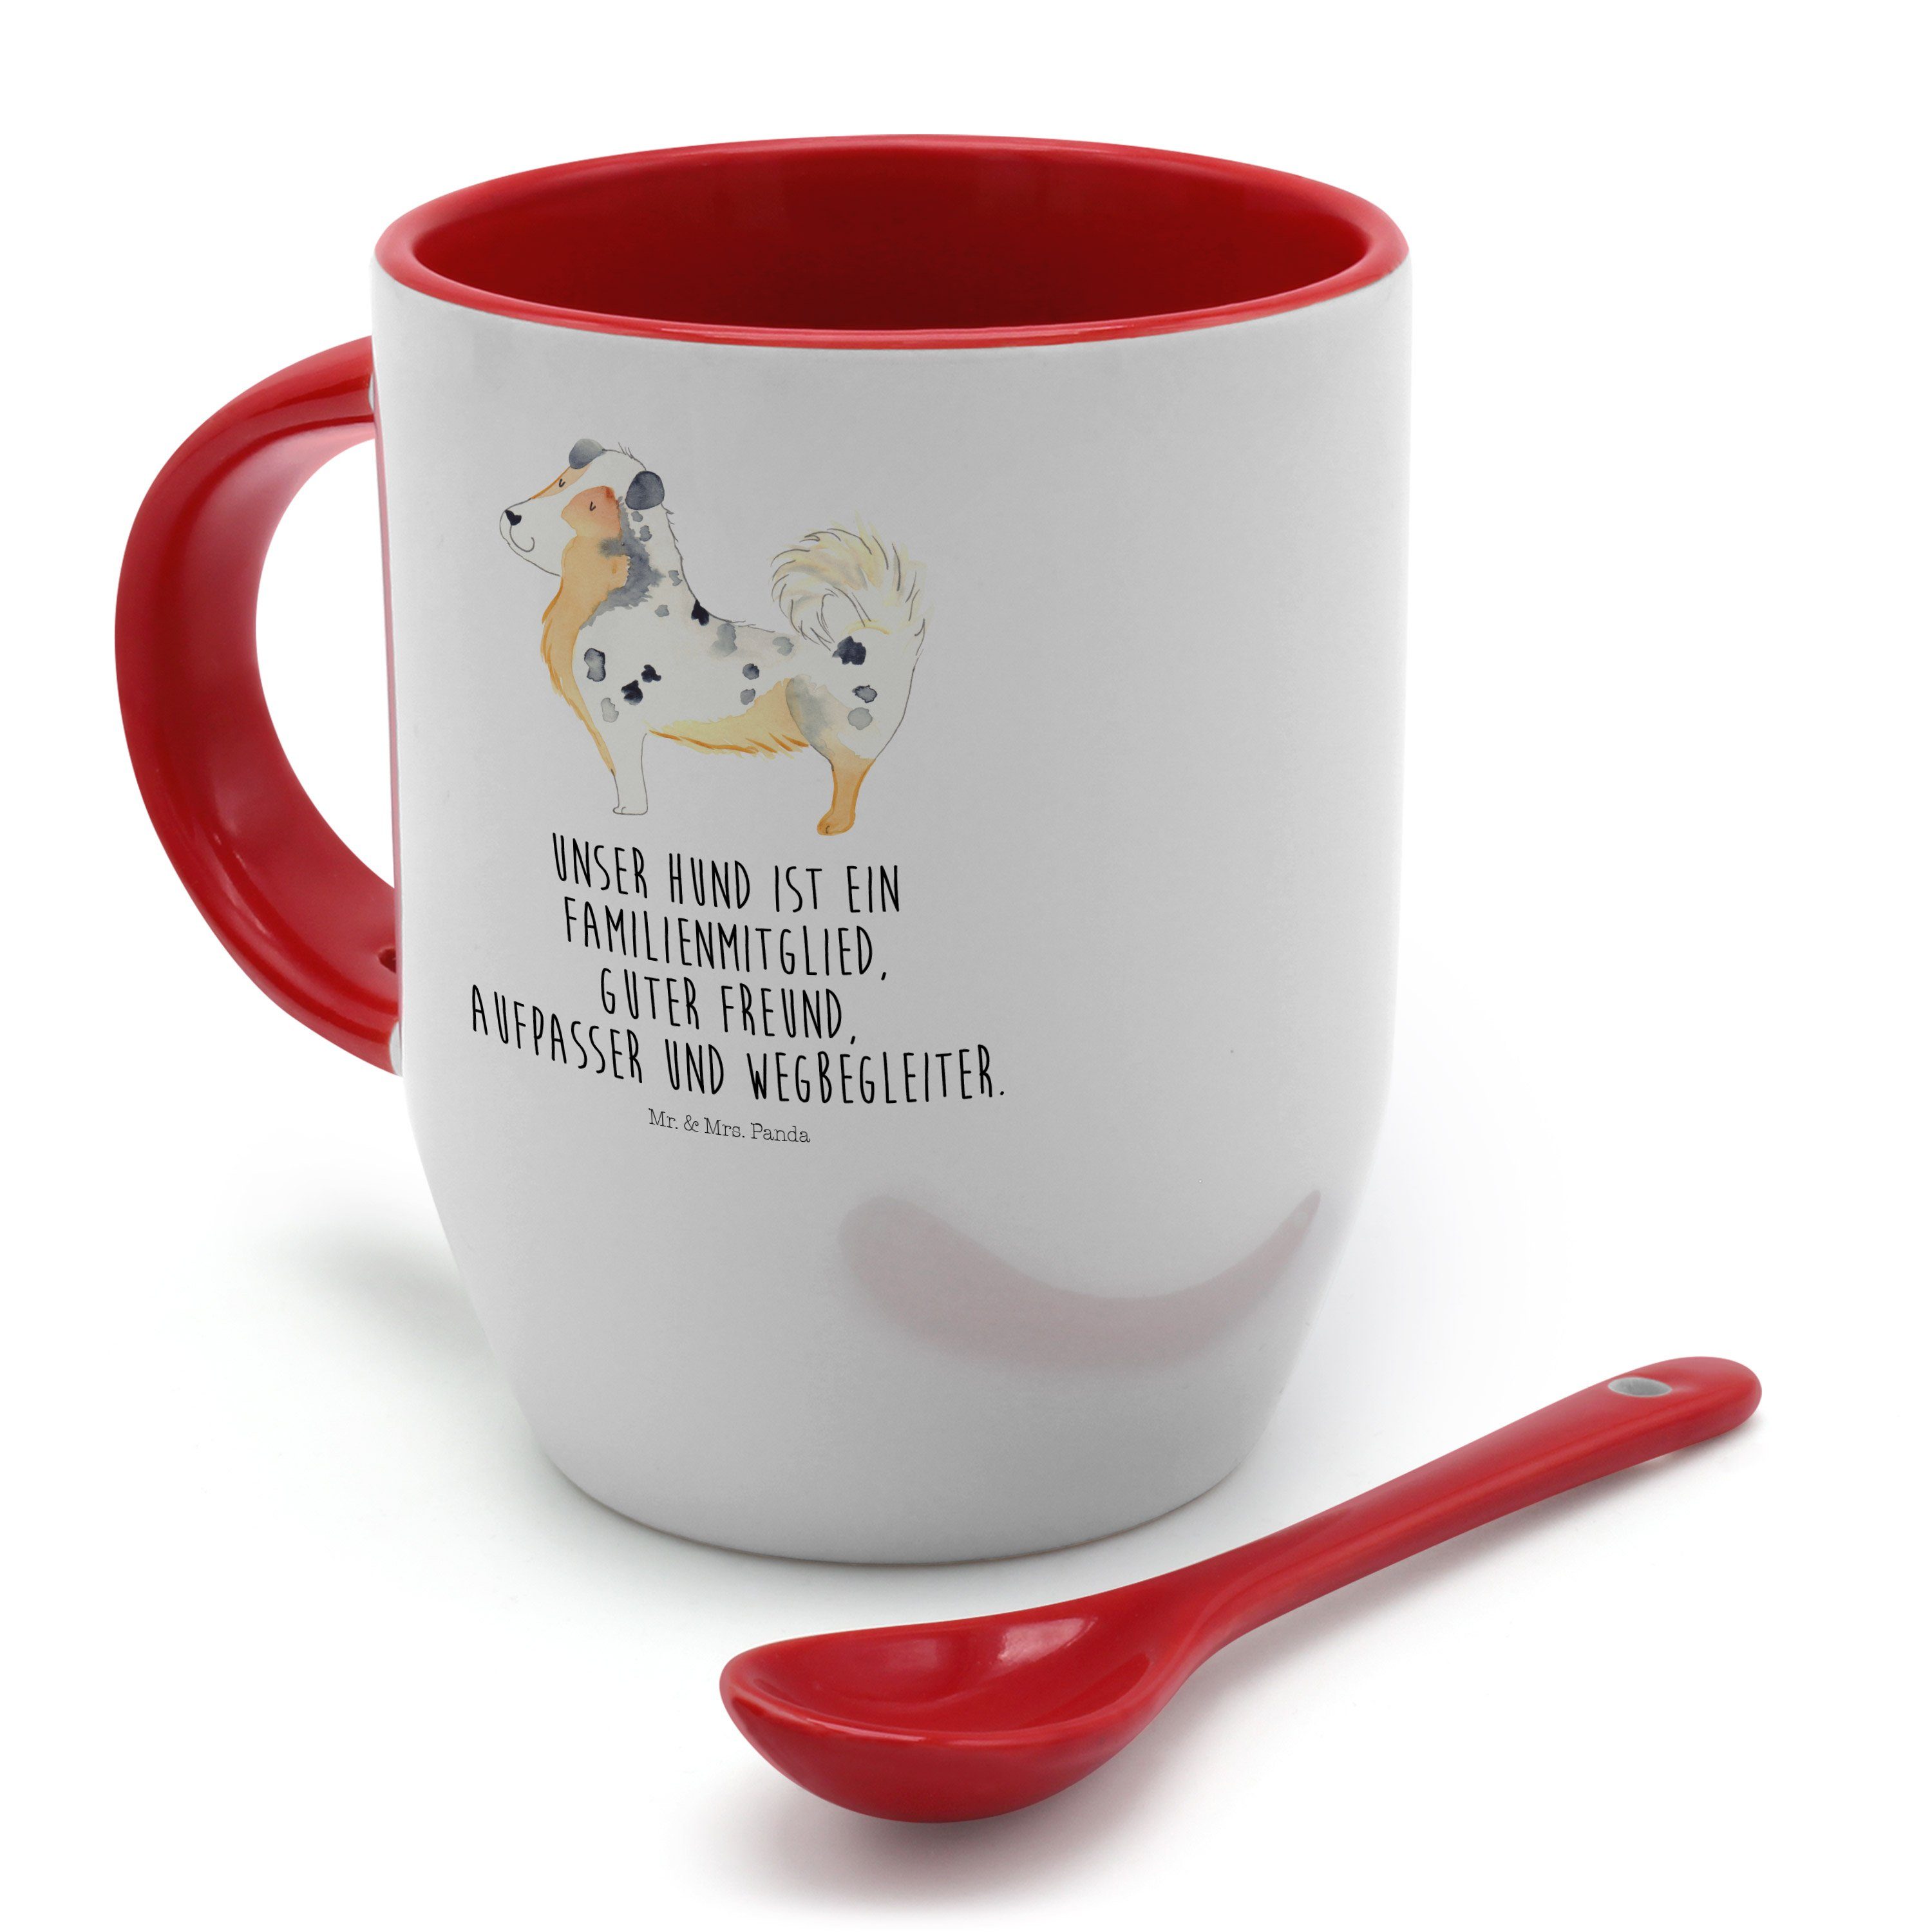 Mr. & Mrs. Panda Australien - Tasse Weiß Keramik Löffel, mit Geschenk, - Shepherd Tasse Kaffeetasse